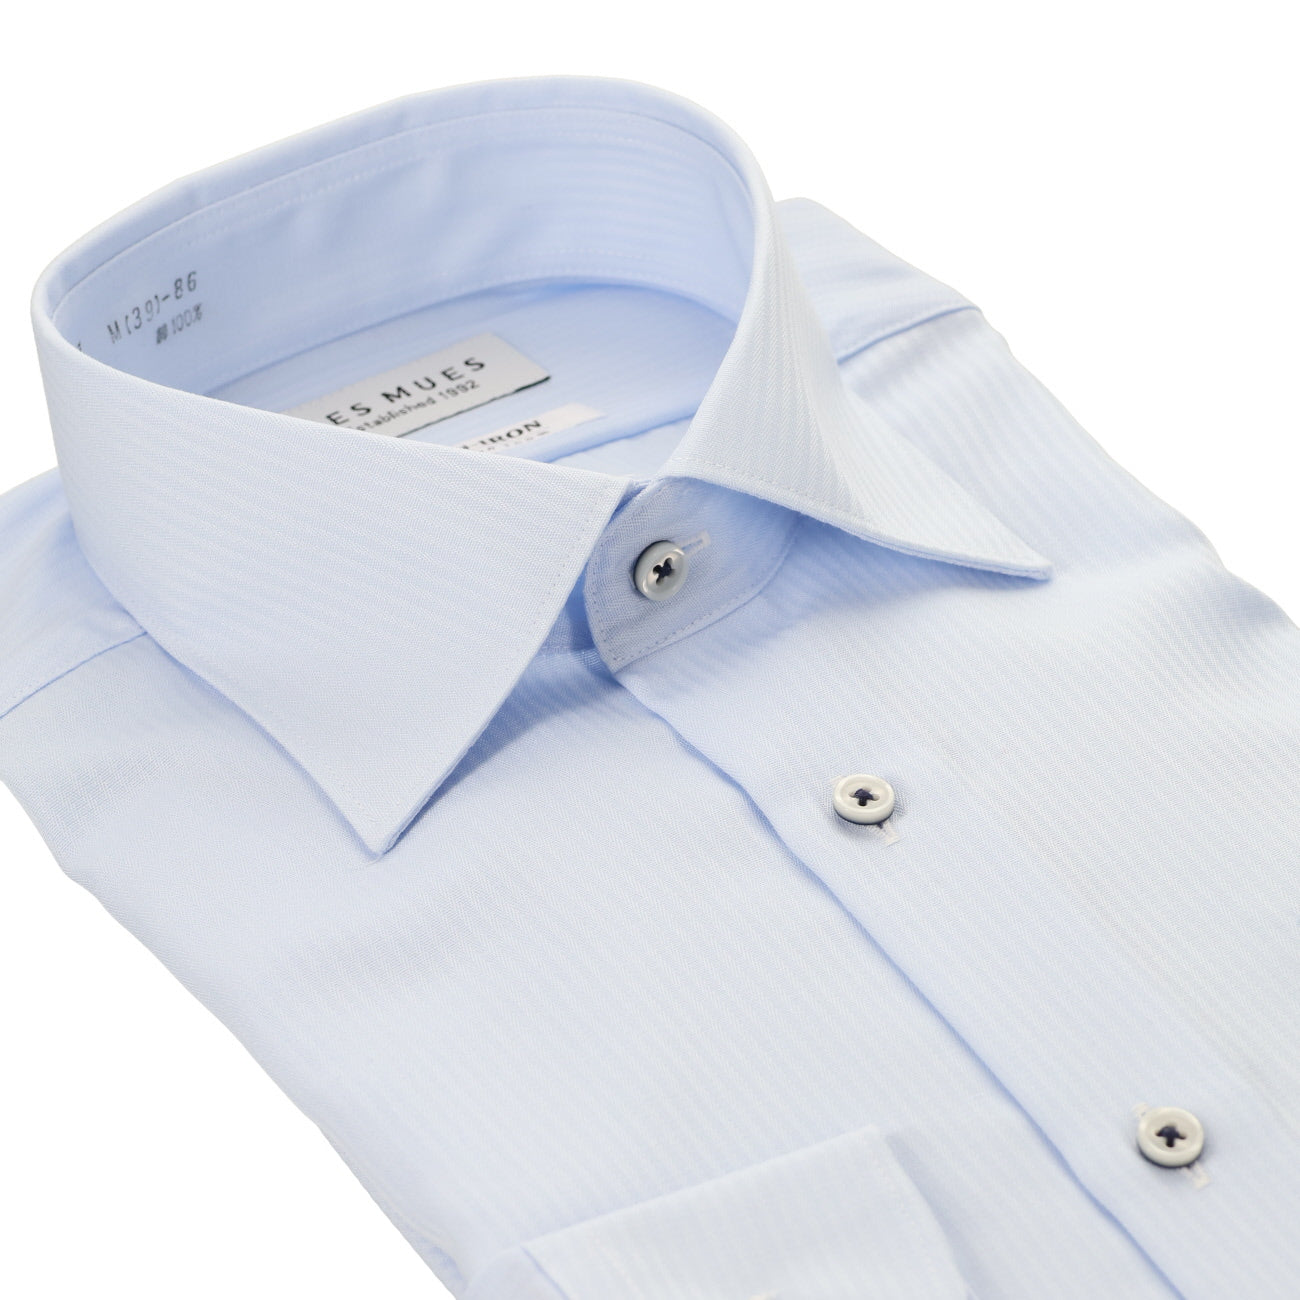 LES MUES 免燙 棉藍色寬領襯衫 - 一般領版型